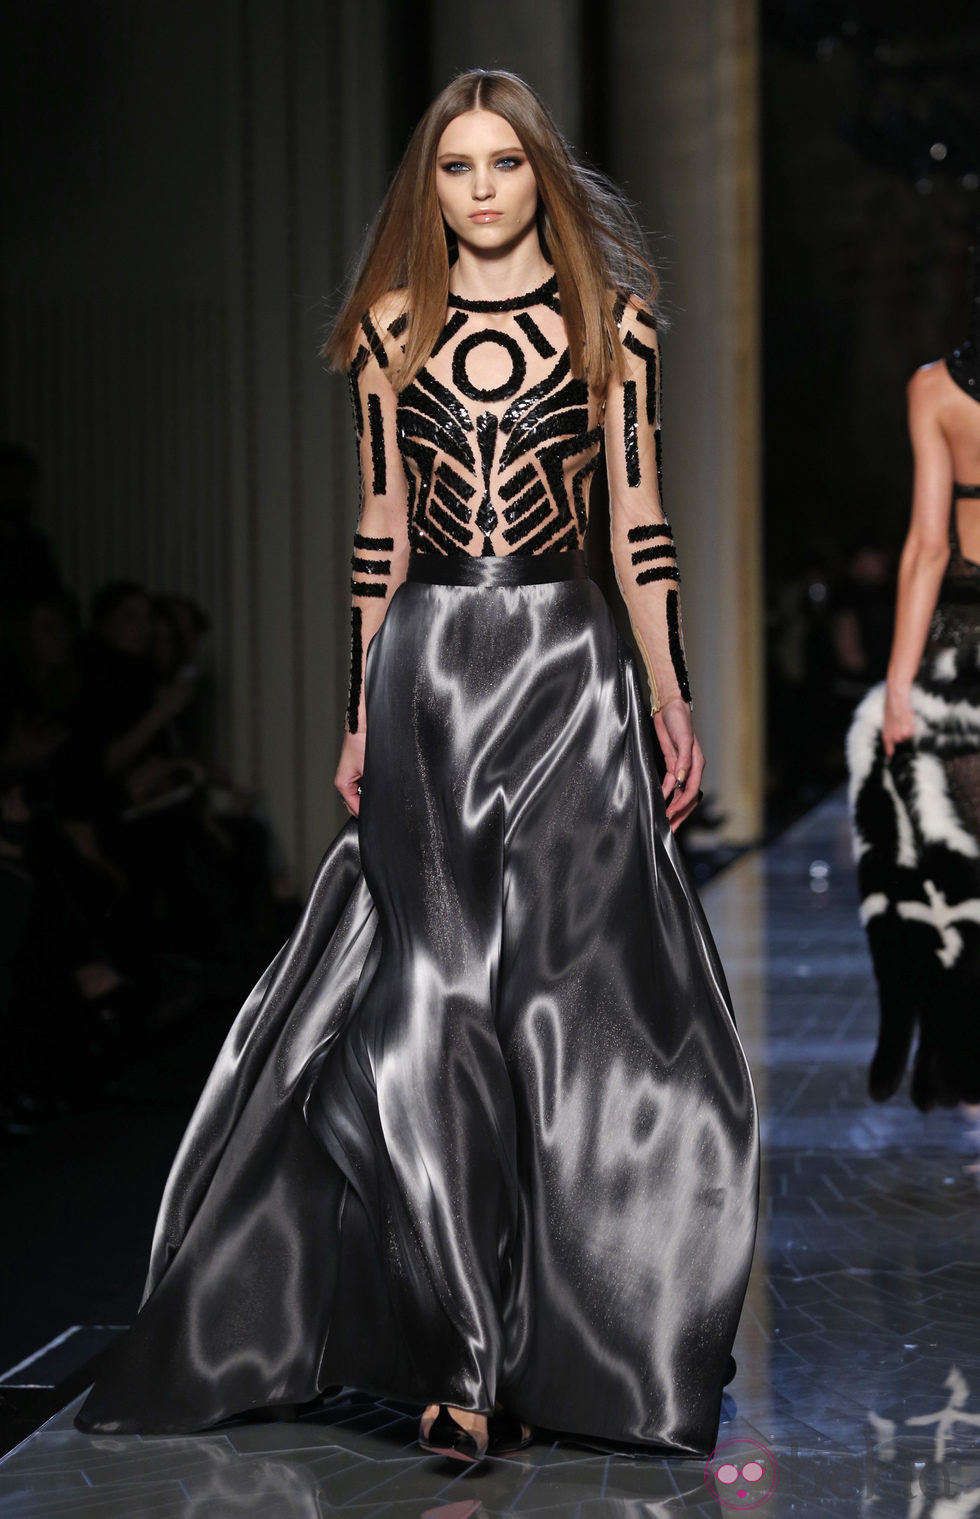 Vestido de la colección primavera/verano 2014 de Atelier Versace